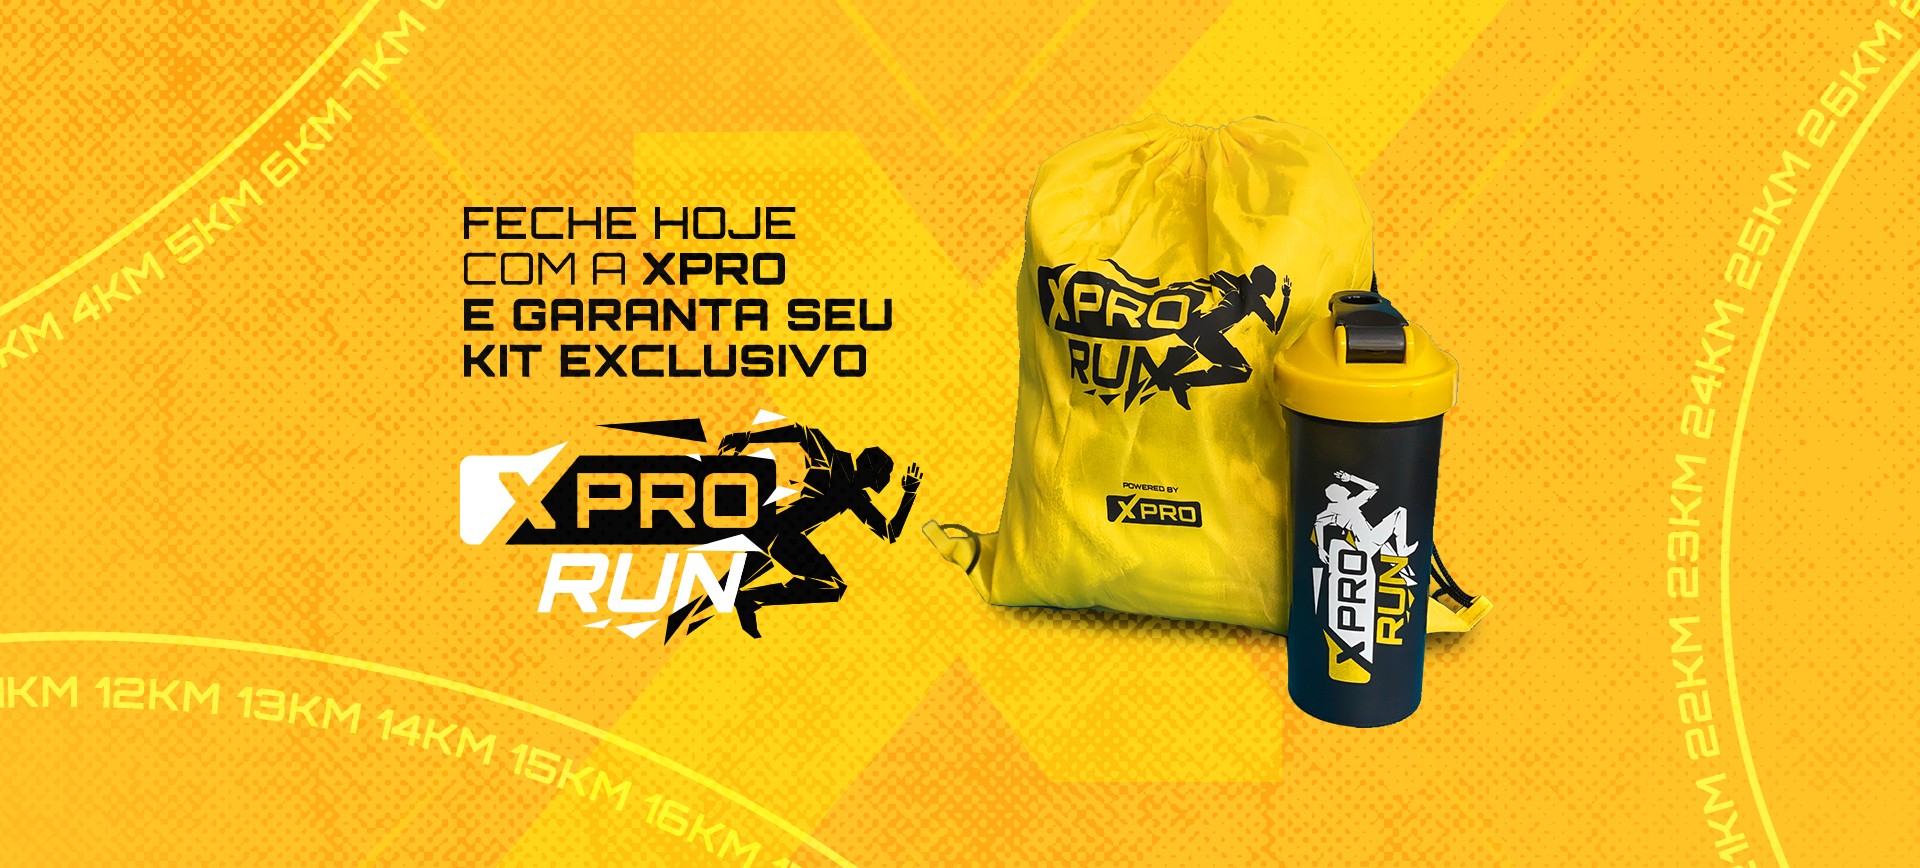 XPRO RUN: Corra mais, corra melhor, corra sem lesão! 1